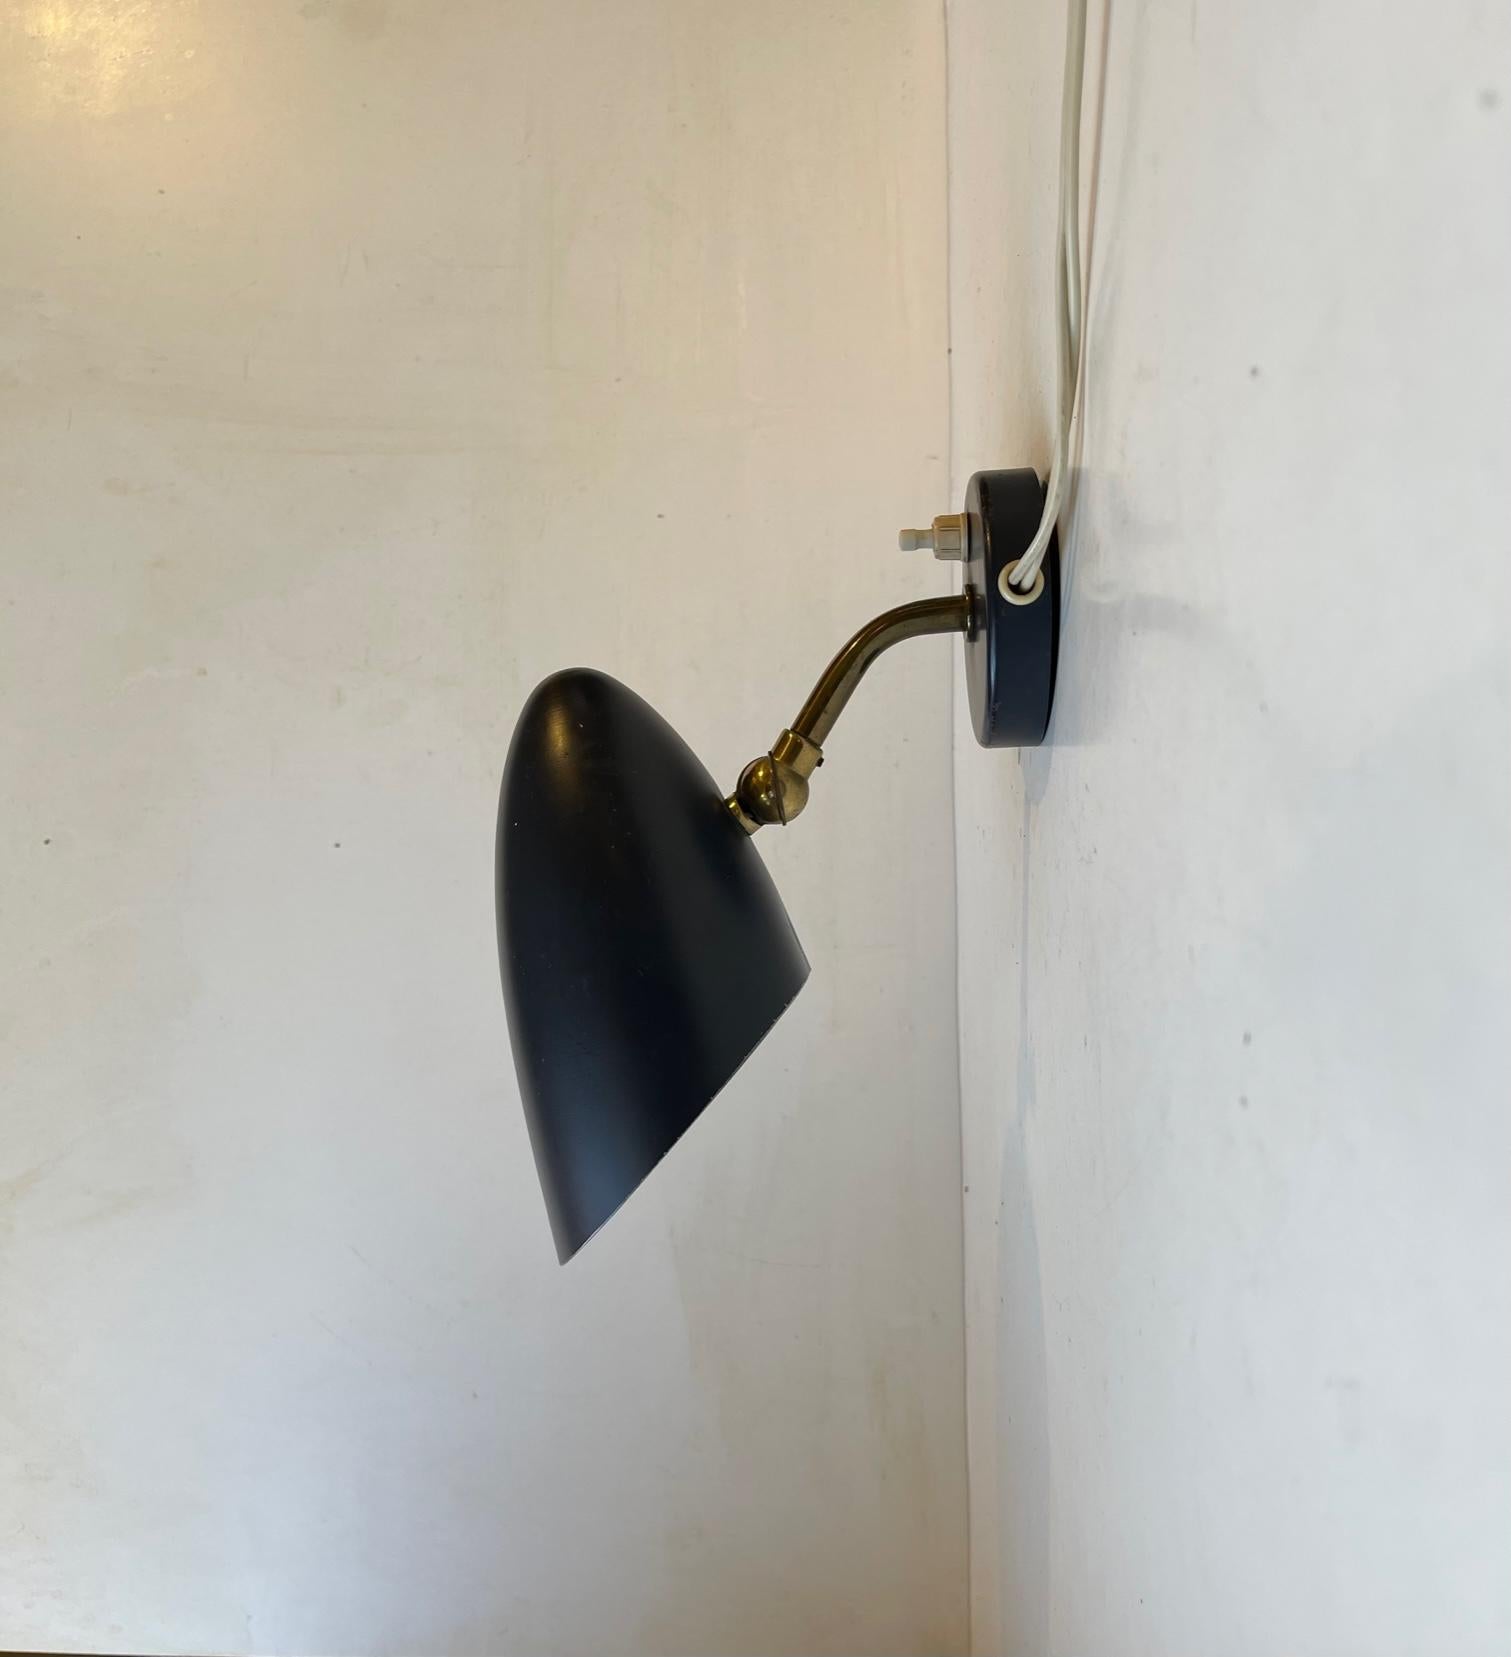 Cette petite applique élégante de couleur noir mat a été fabriquée par Fog & Mørup au Danemark dans les années 1940. La pièce comporte une tige réglable en laiton patiné qui permet à l'utilisateur de diriger la lumière à l'endroit souhaité. Son